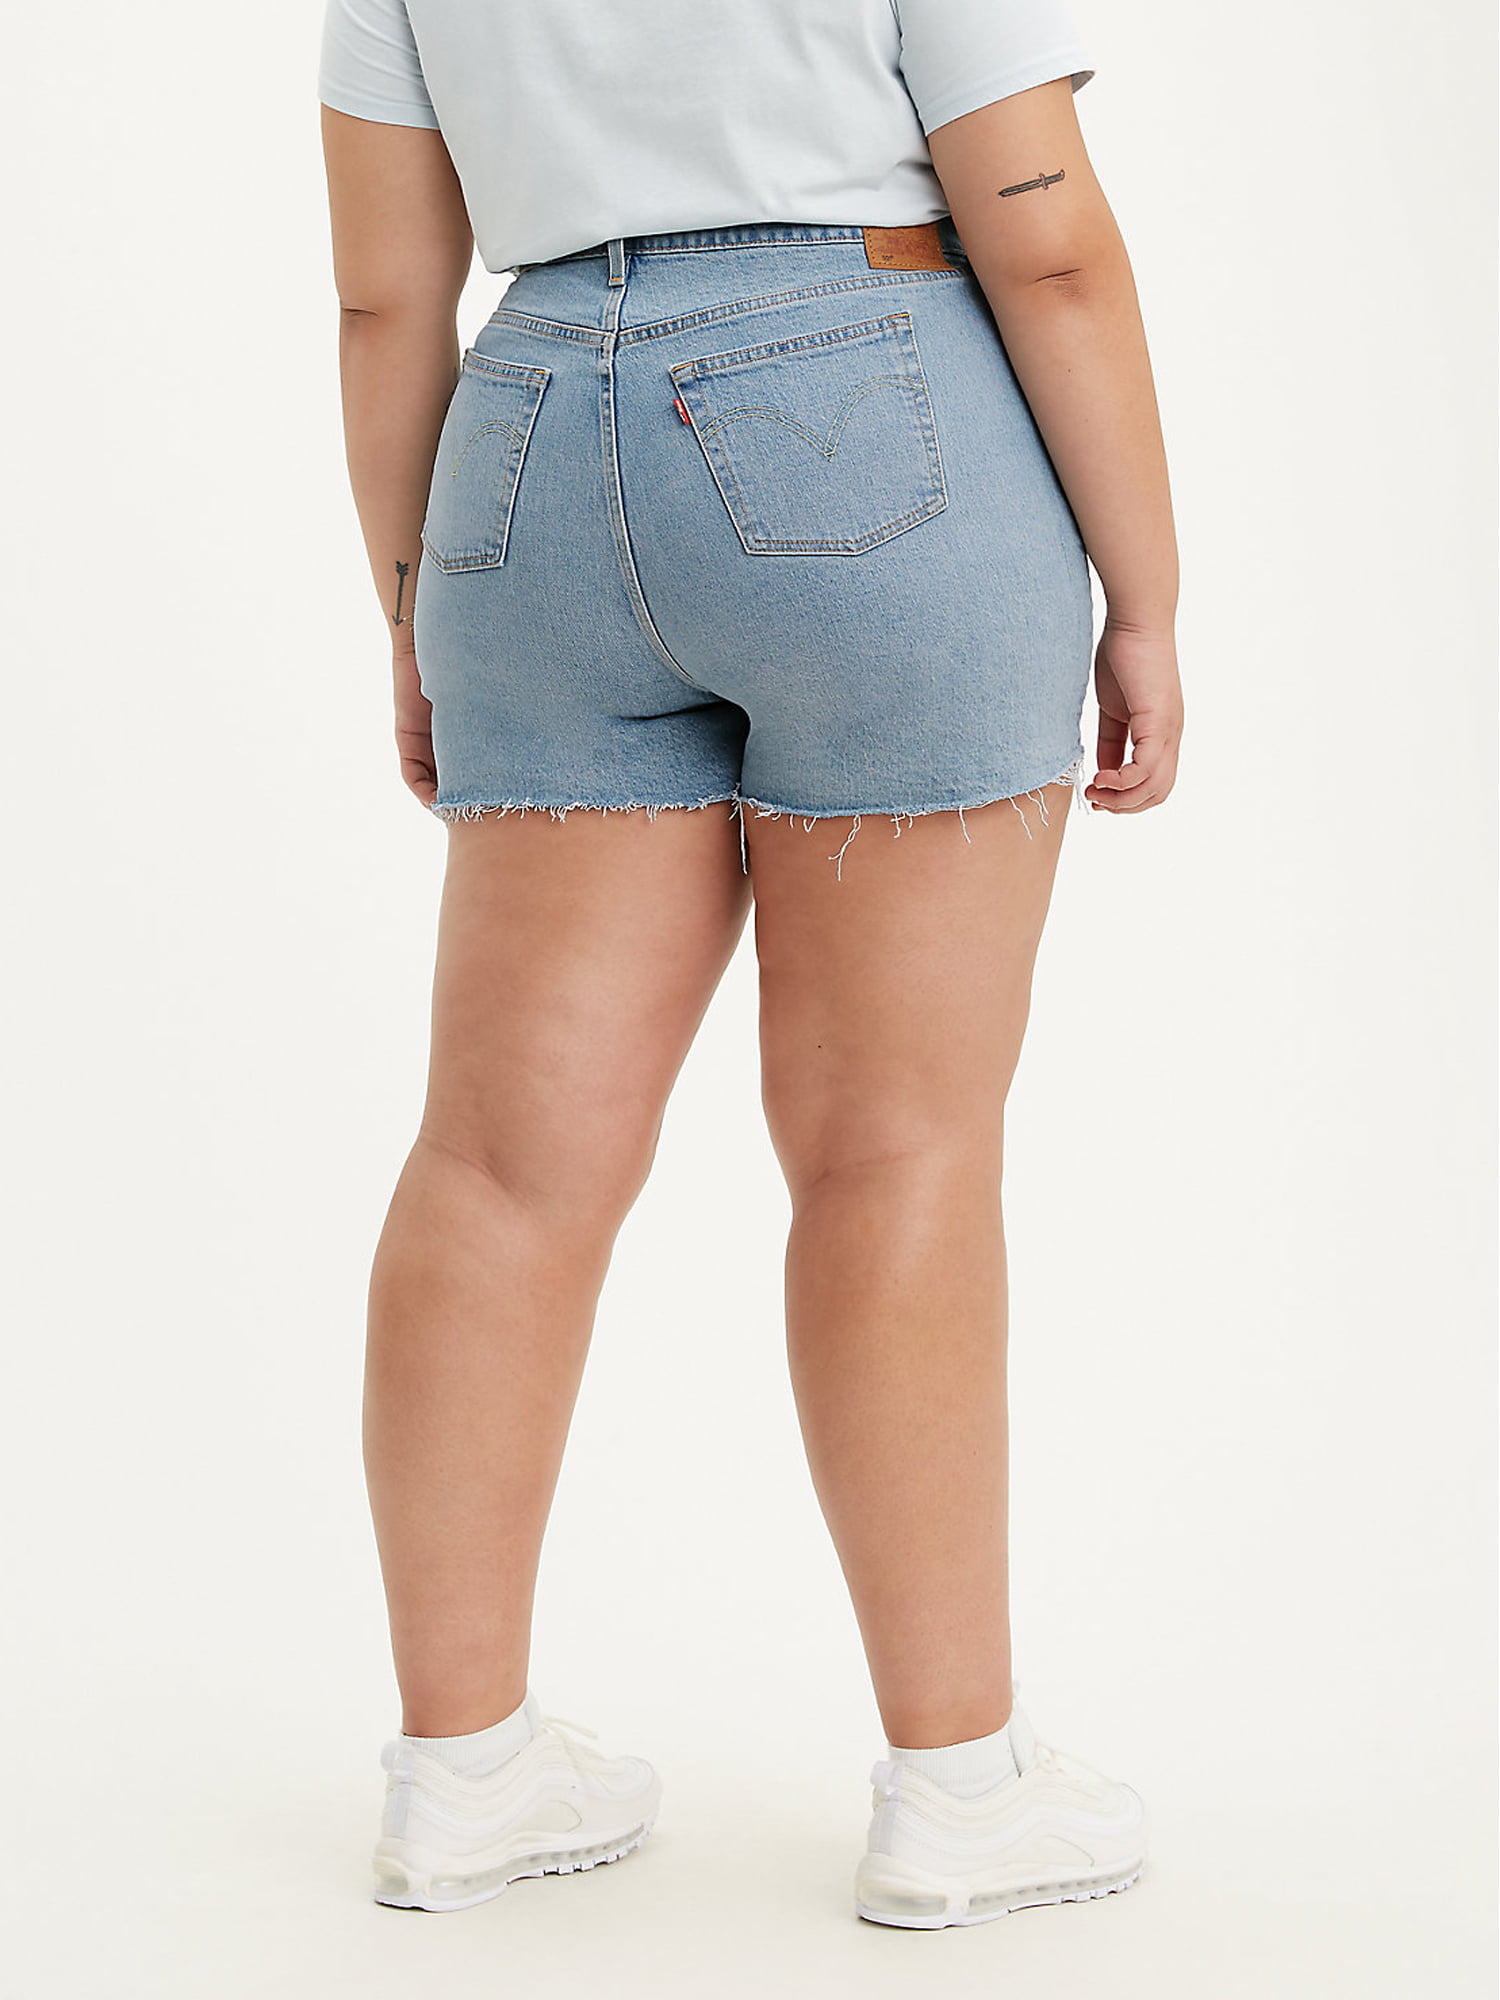 Levi's Women's Plus Size 501® Original High-Rise Jean Shorts 